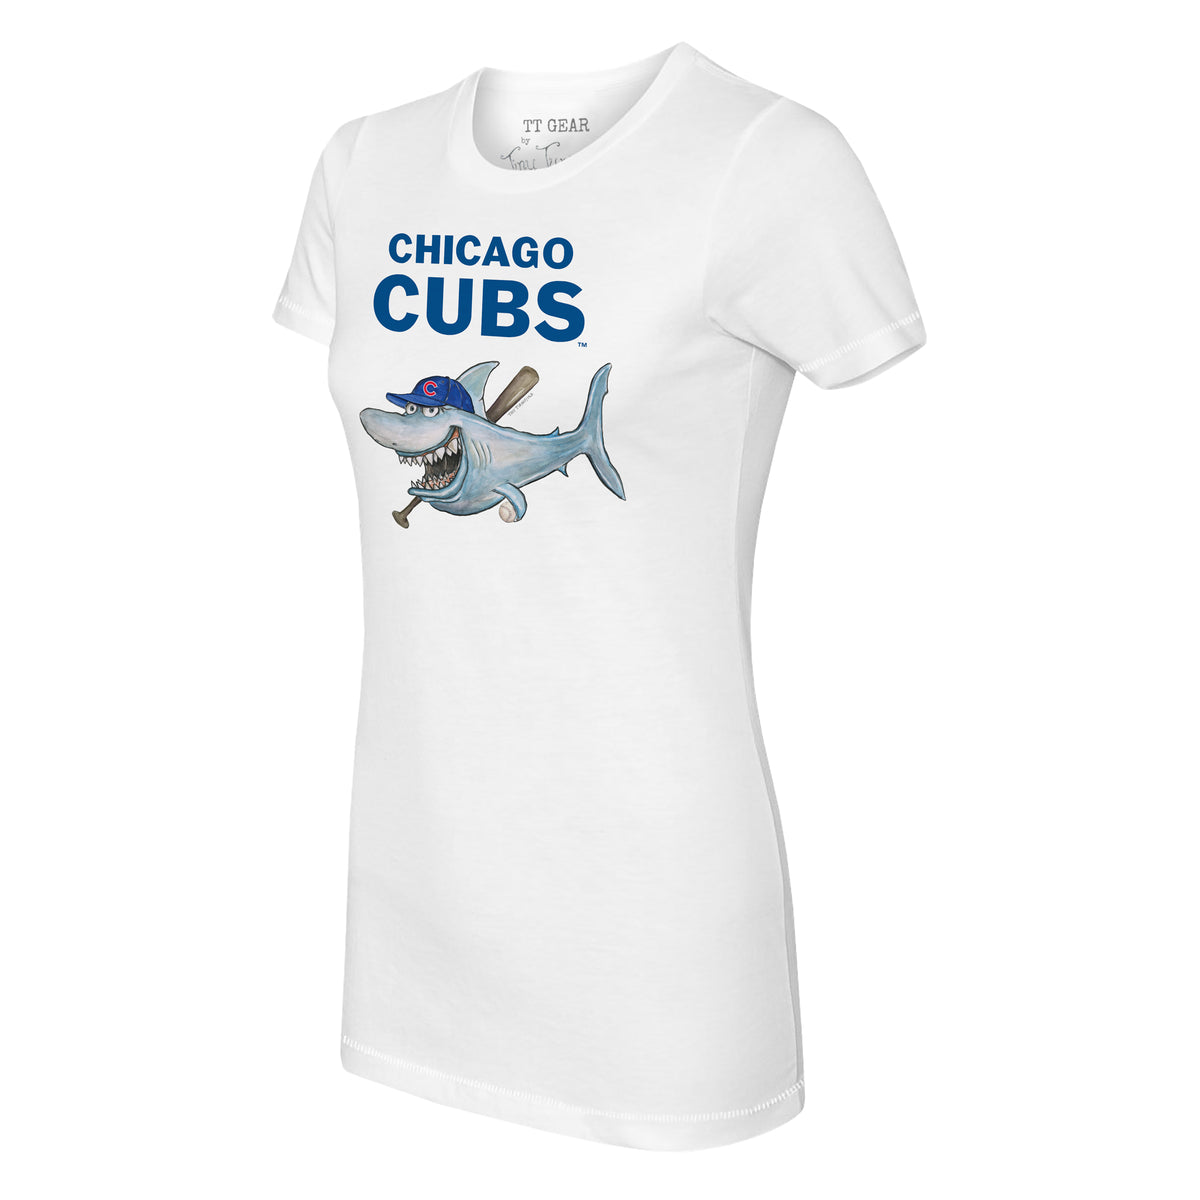 Chicago Cubs Shark Tee Shirt